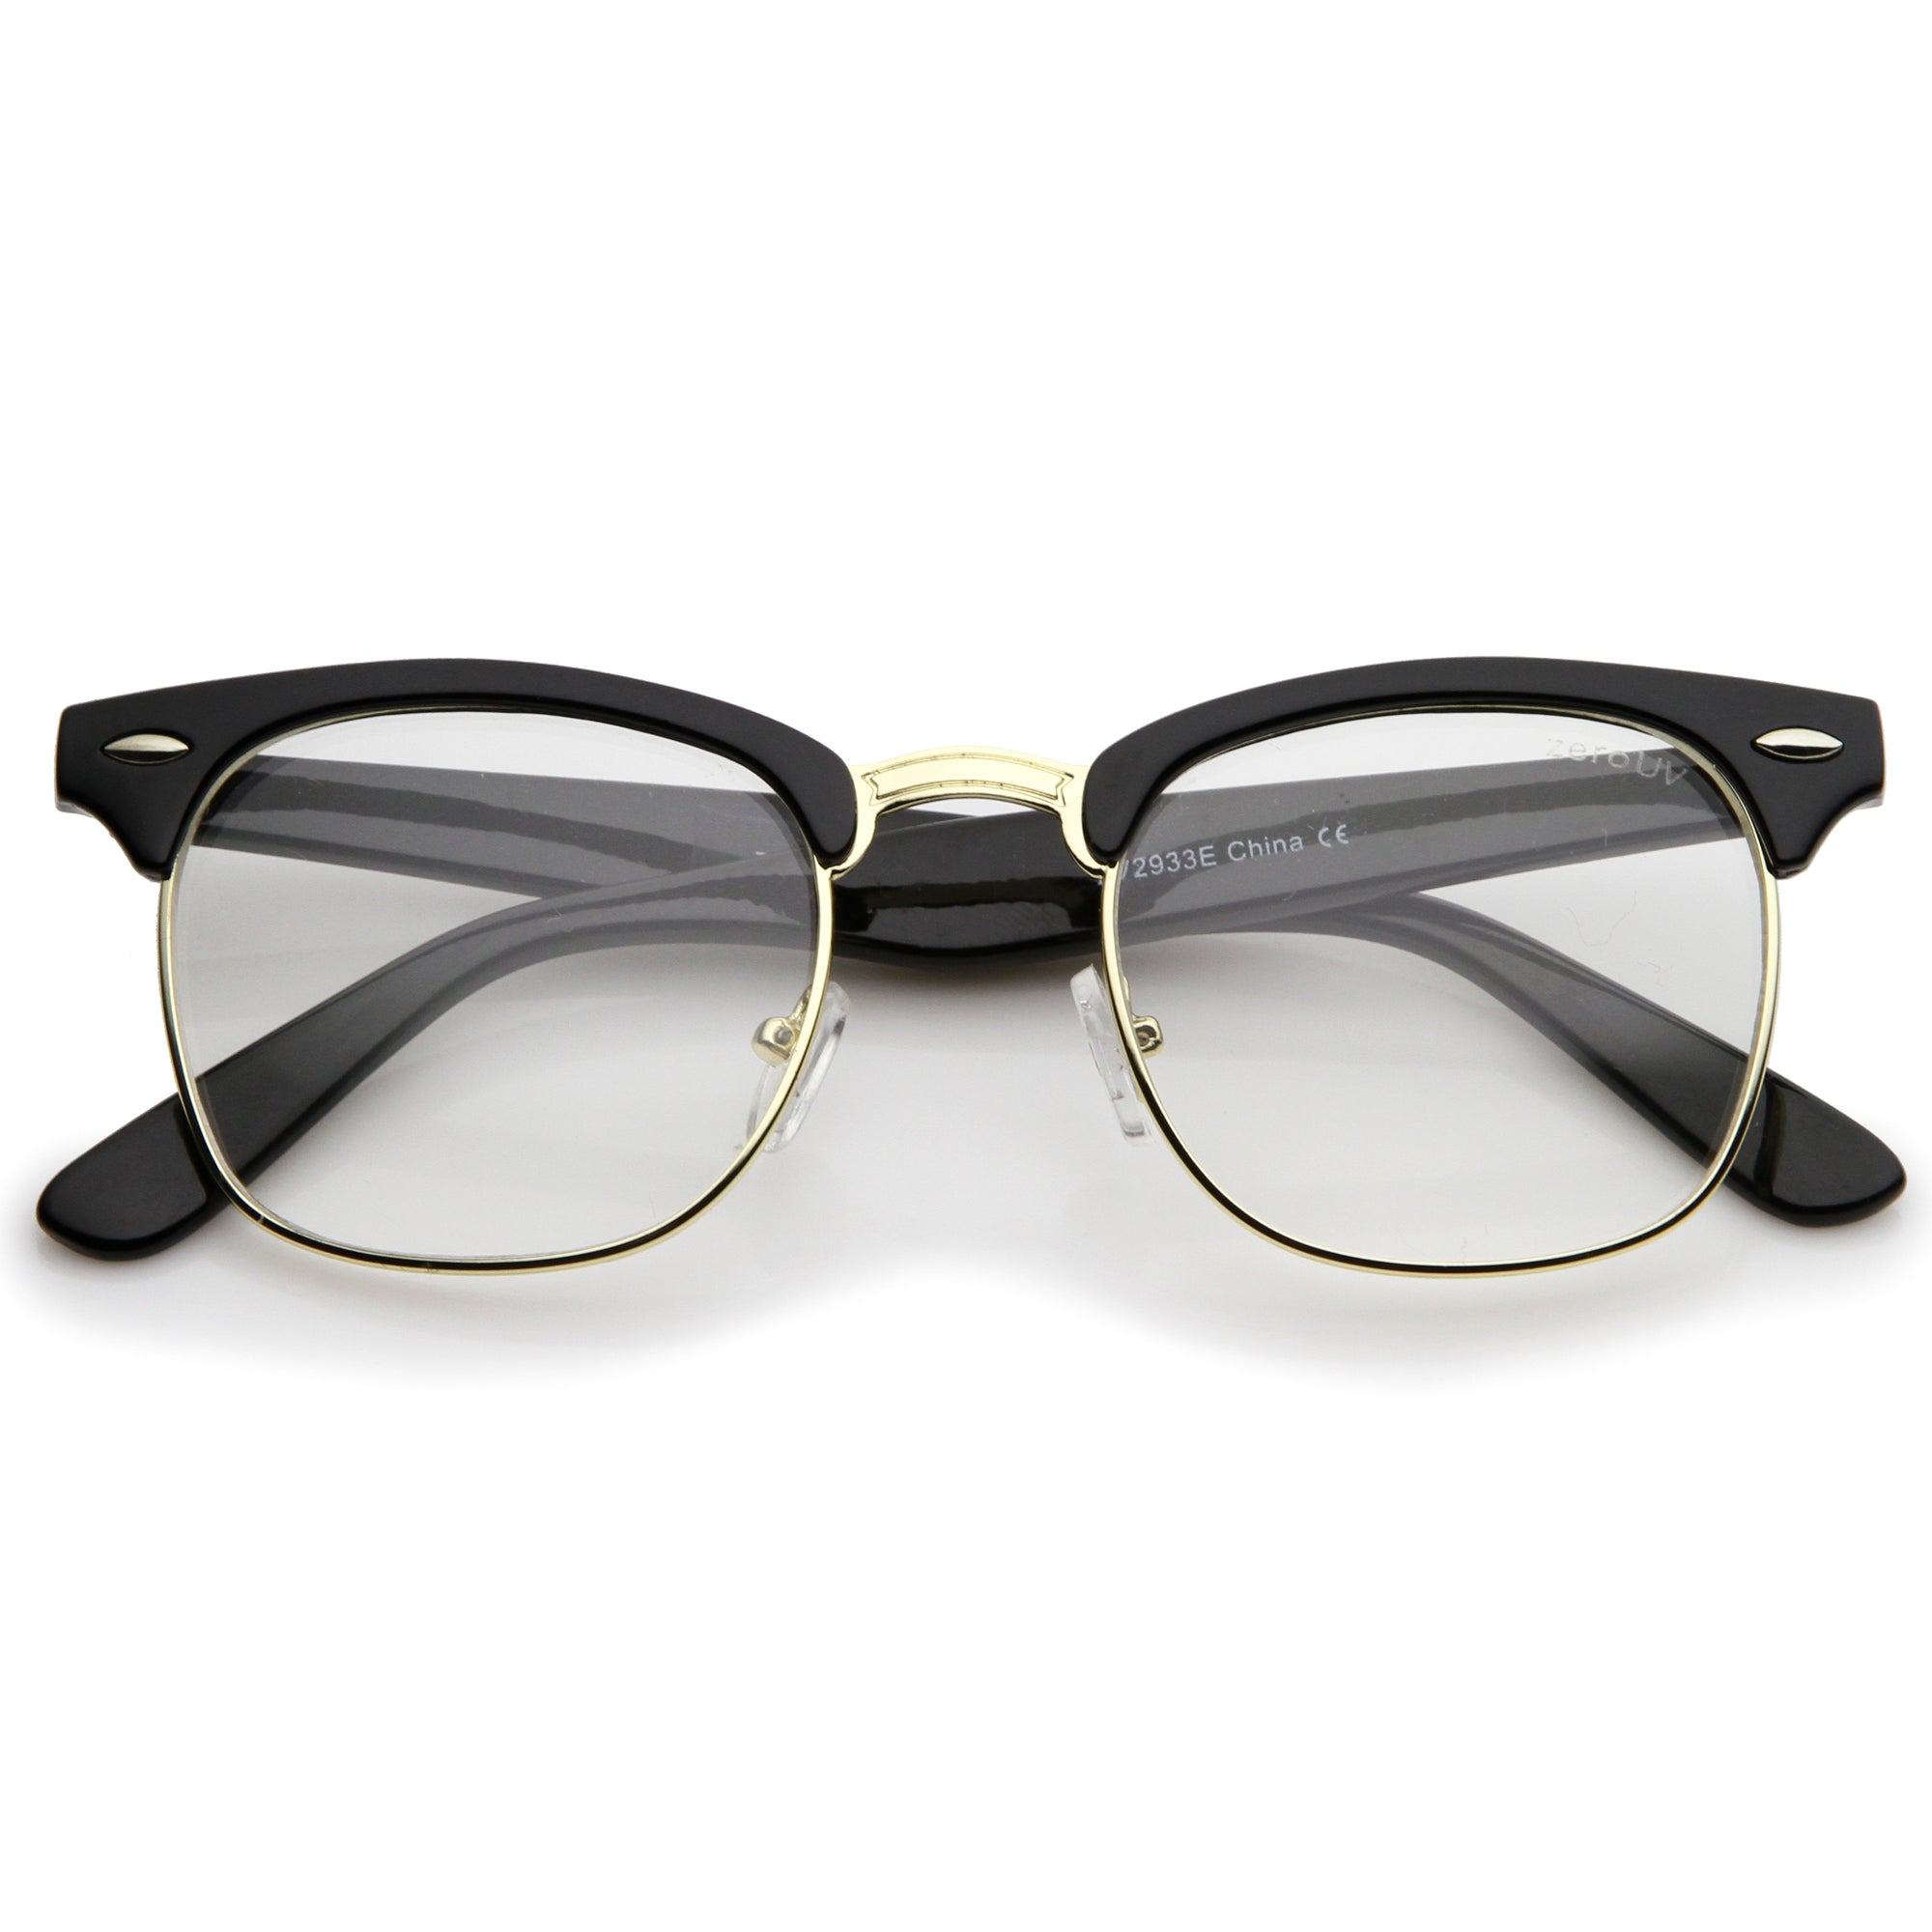 Gafas de lentes transparentes con borde de cuernos clásico de inspiración vintage 2933